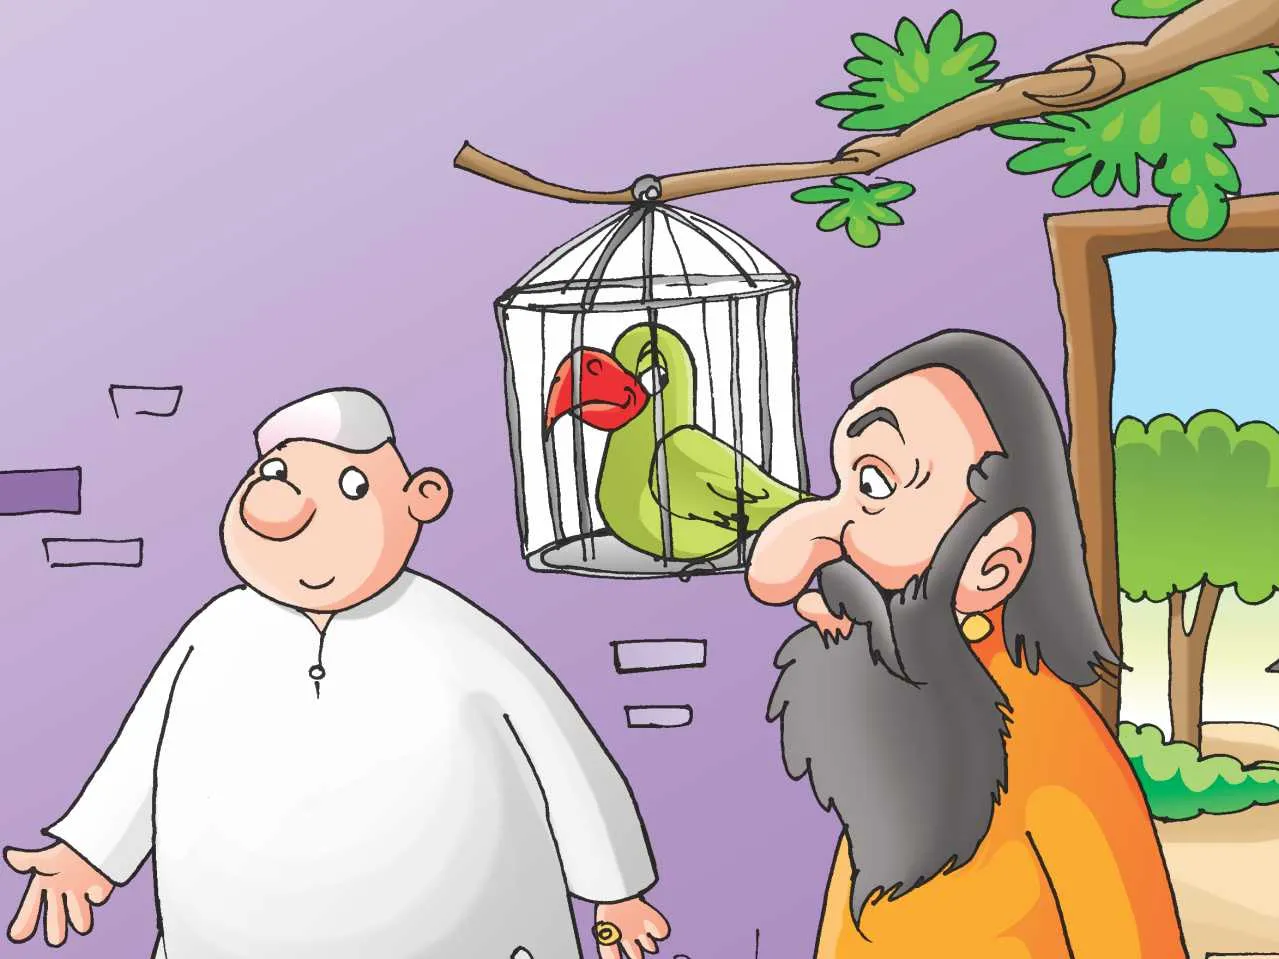 Saint business man and parrot cartoon image